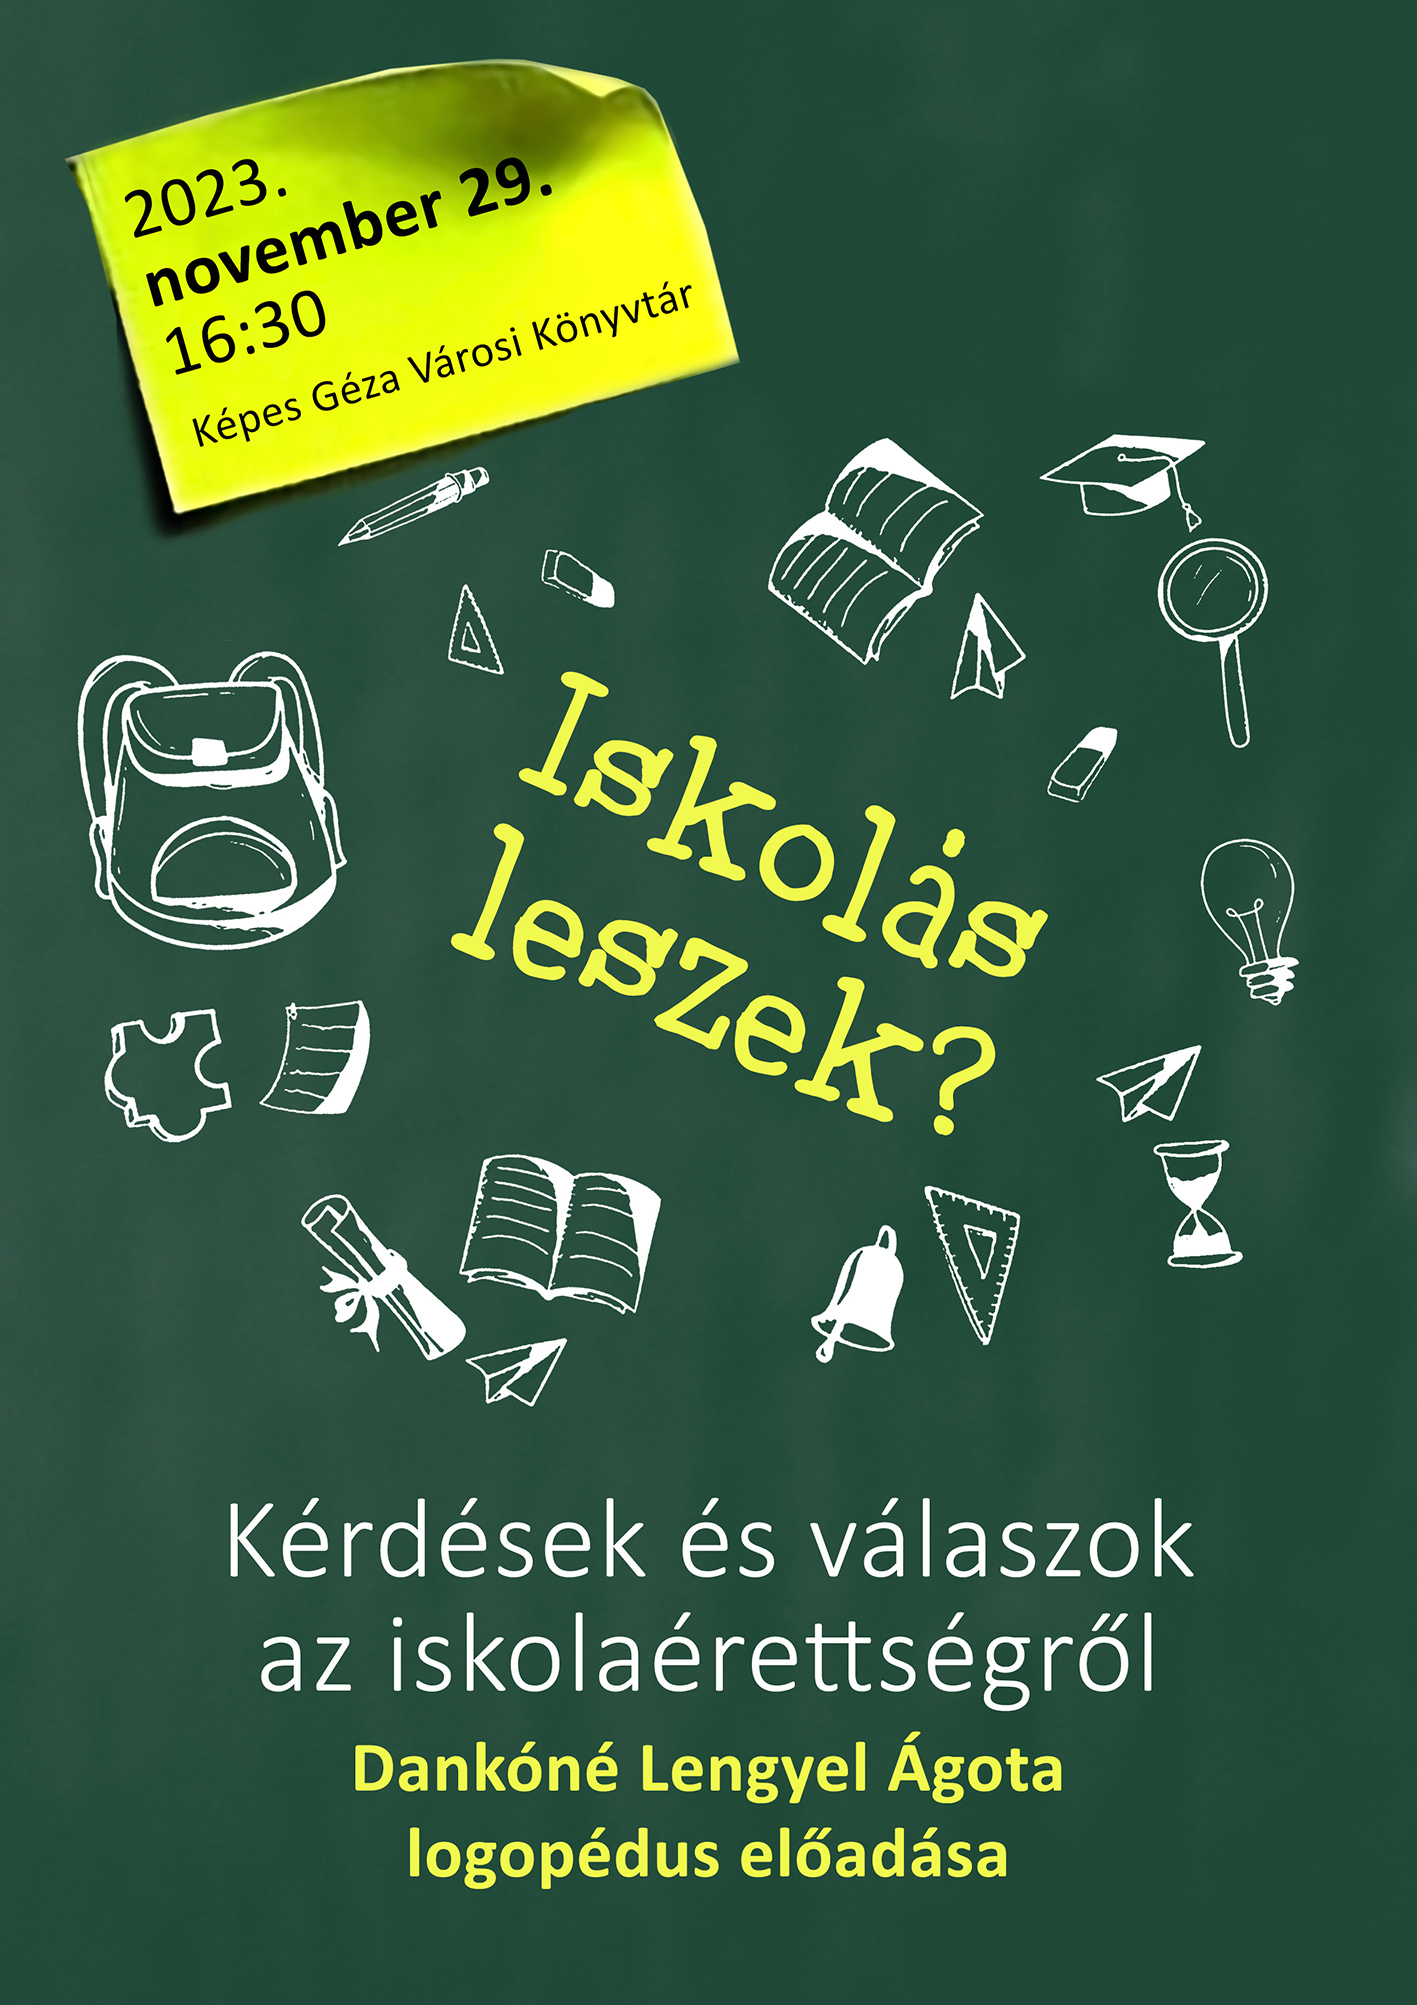 IskolasLeszek plakat web